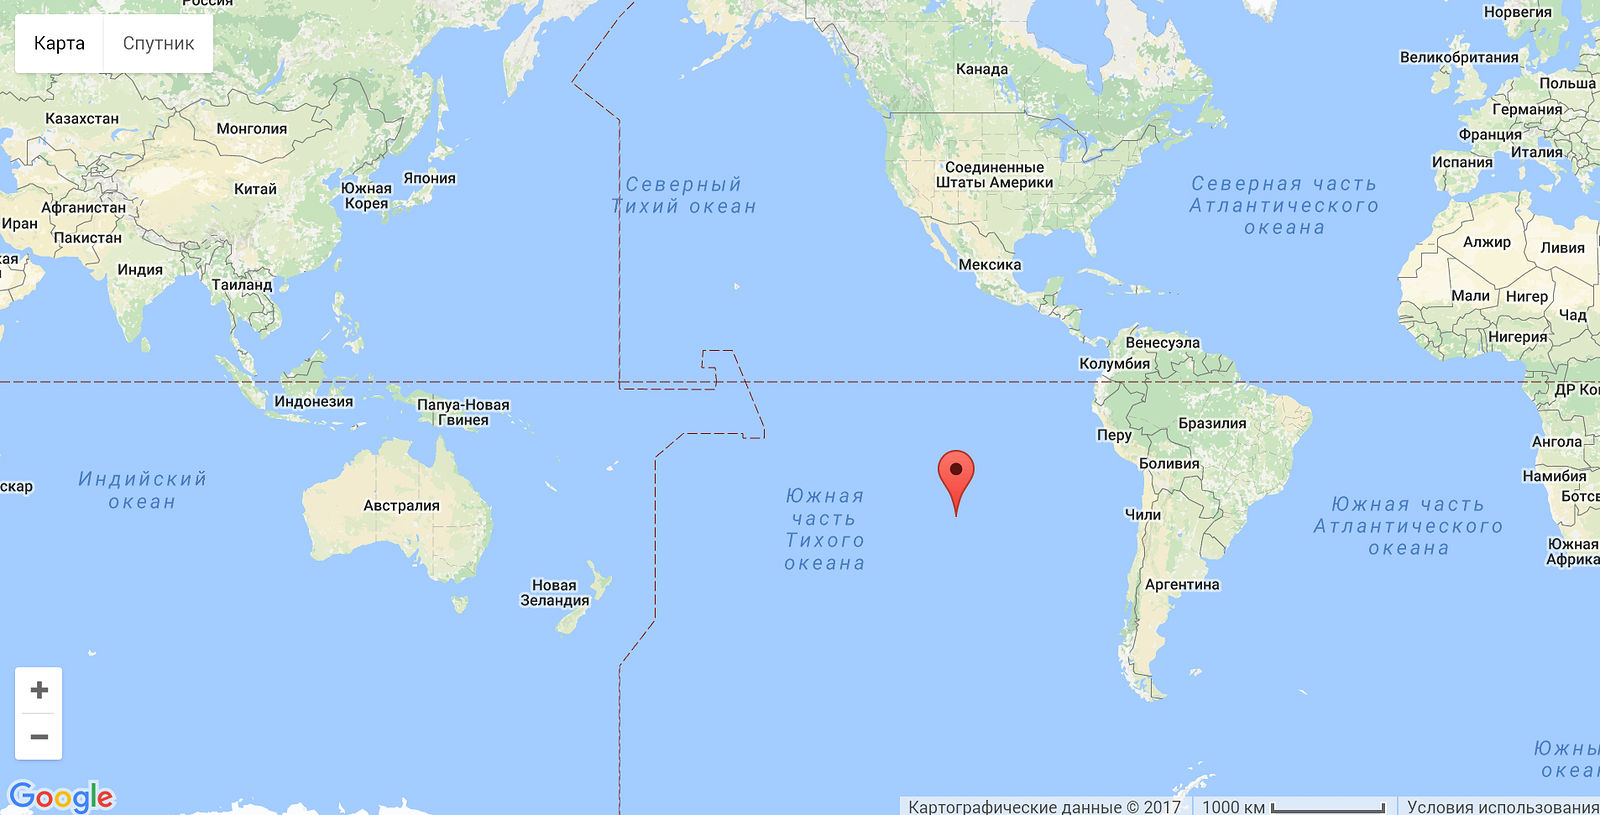 Остров Пасхи географическая карта